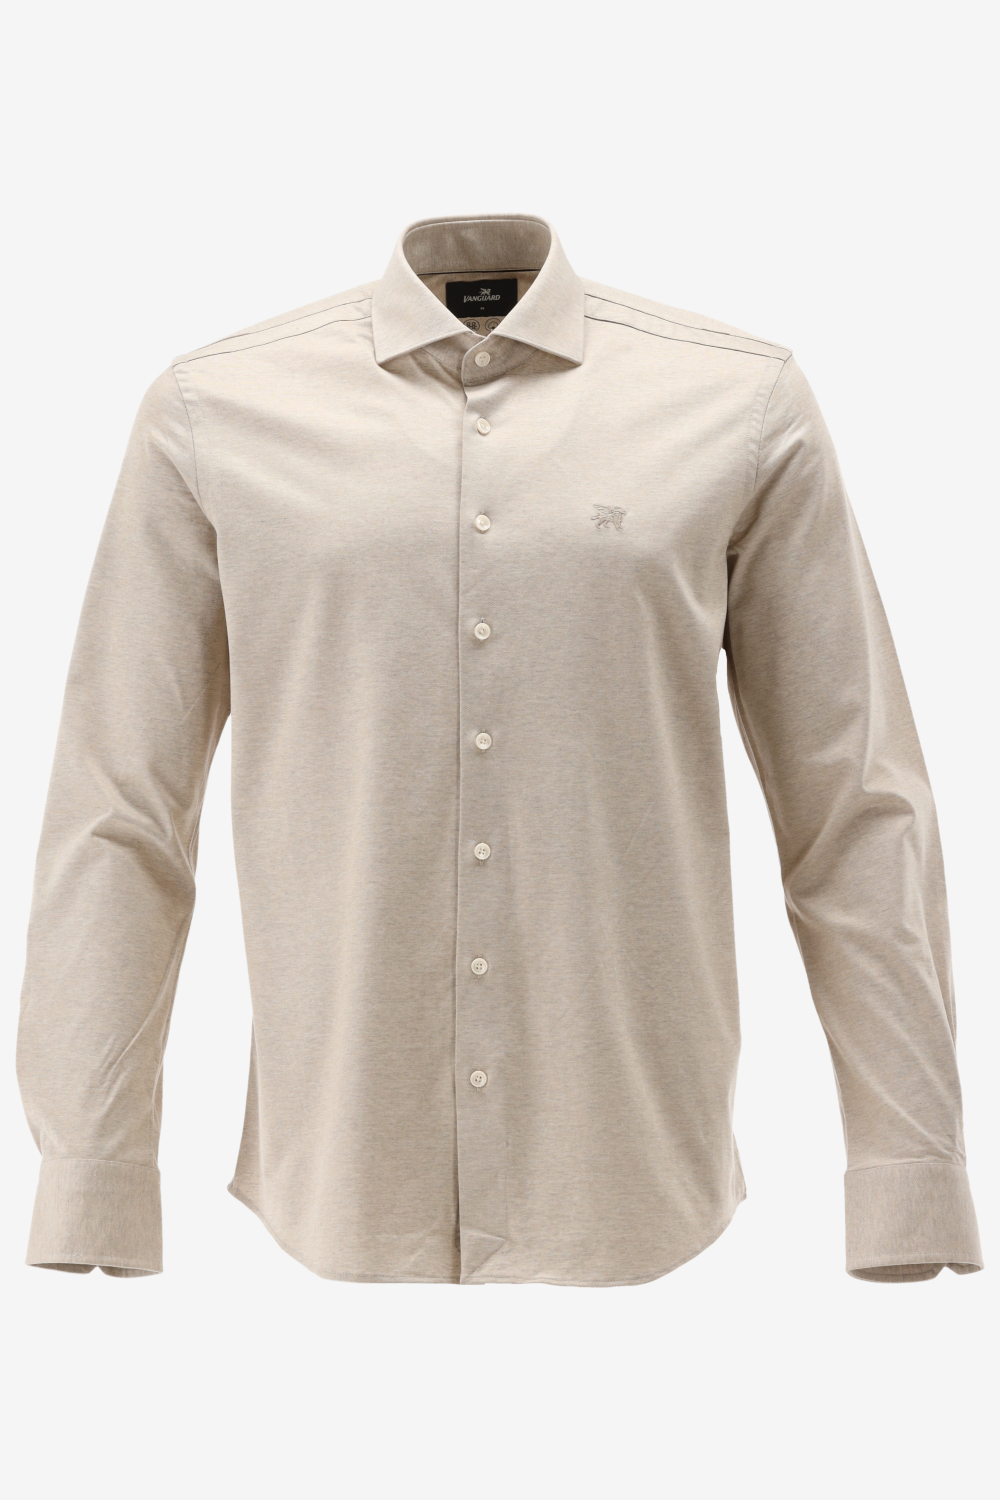 Vanguard - Overhemd Beige - Heren - Maat L - Modern-fit